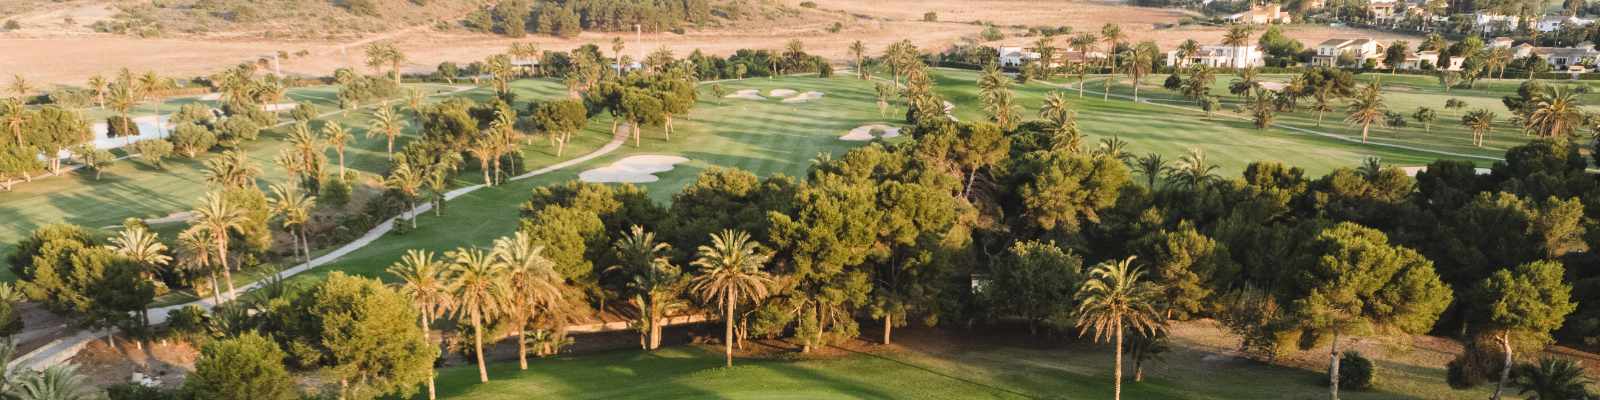 Einer der umliegenden Golfkurse im Grand Hyatt La Manga Club and Resort (photo by Hyatt Hotels Corporation)